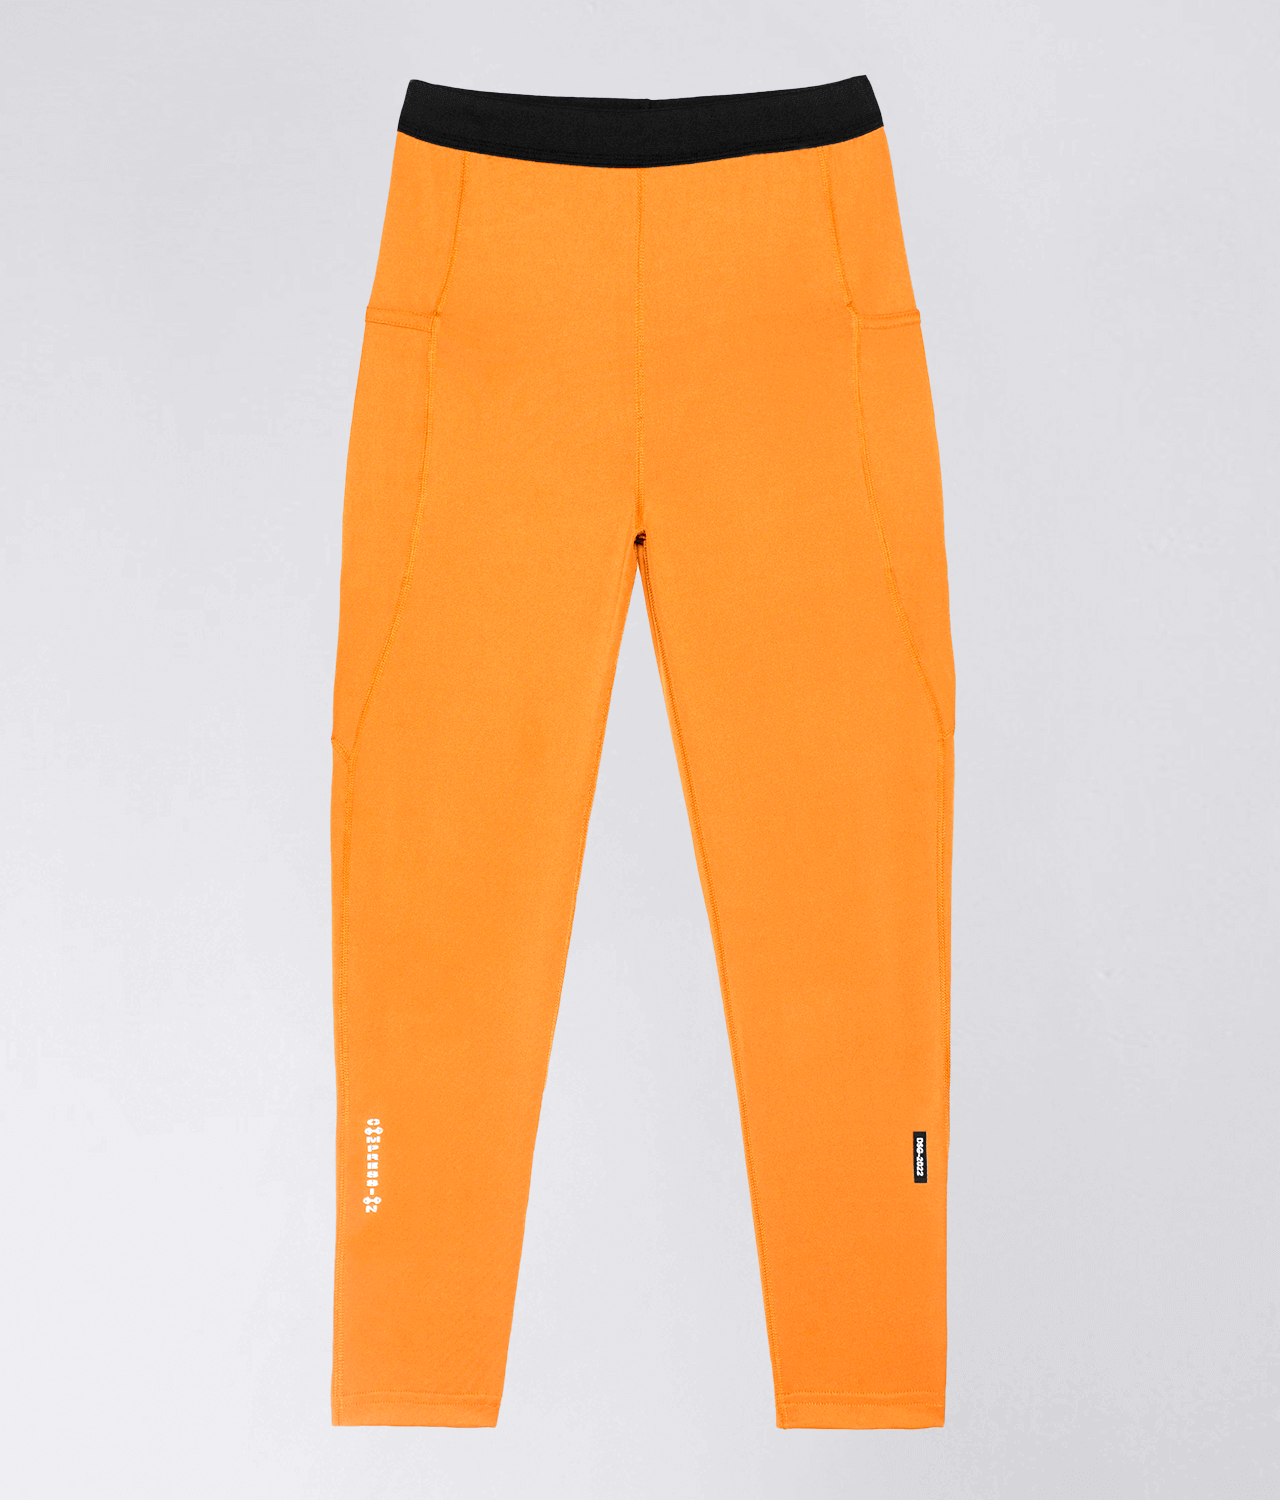 Born Tough Side Pockets Compression Orange Running Legging Pants